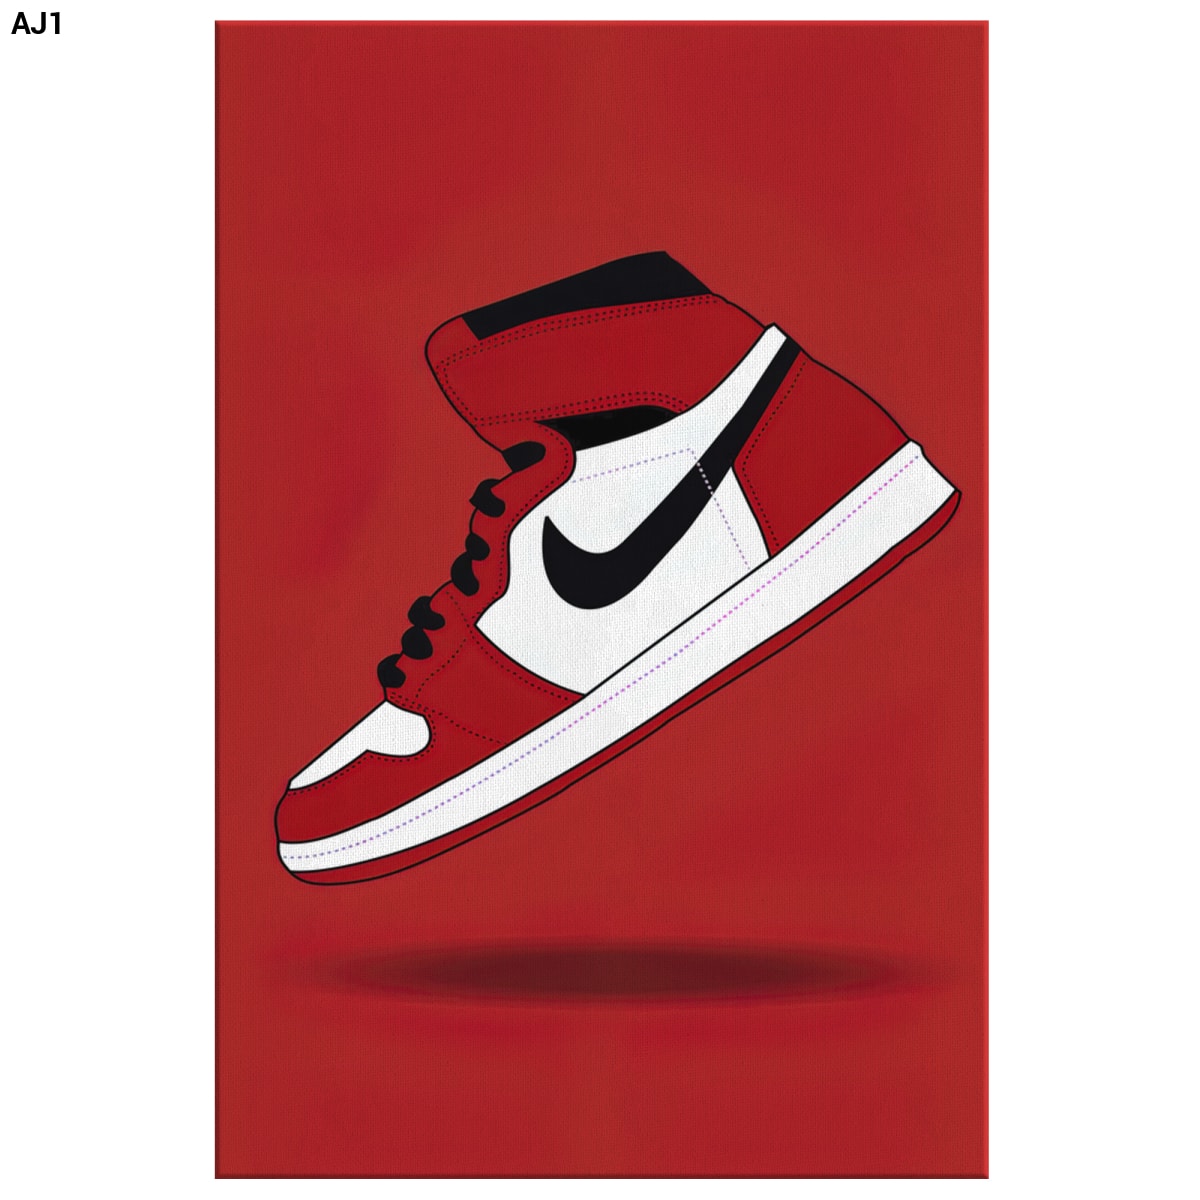 Custom Nike Air Jordan 1 canvas